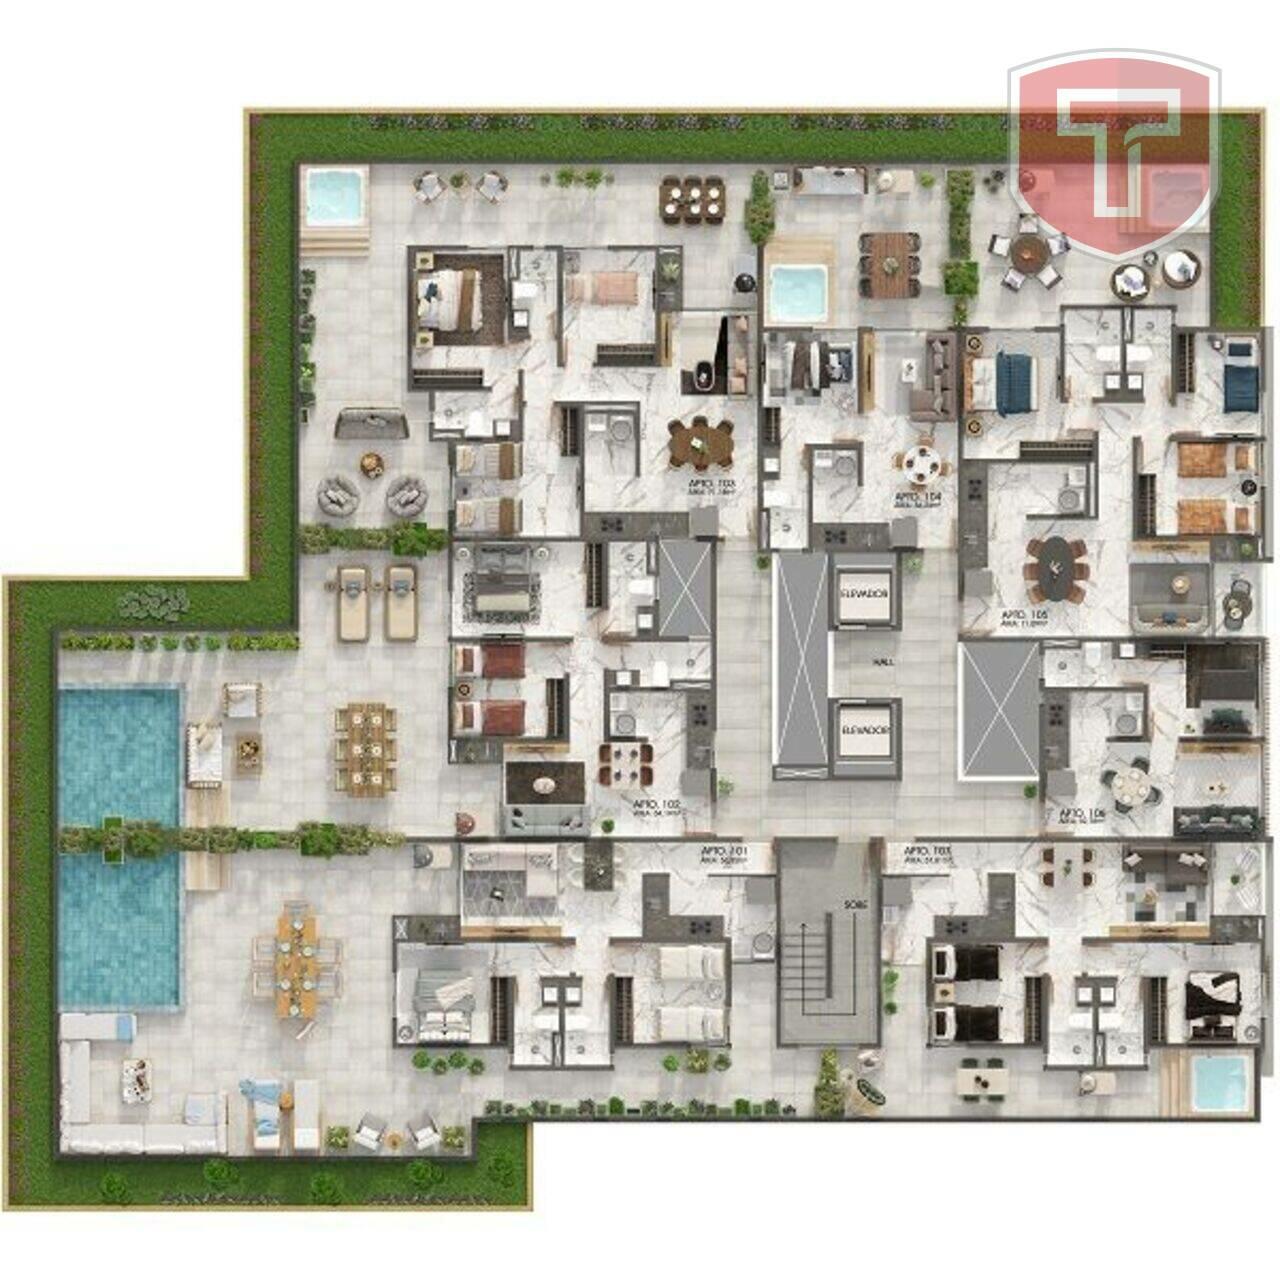 Magnifique Ewerton Webber Azevedo - Apartamento com 2 quartos à venda - Jardim Oceania, João Pessoa/PB